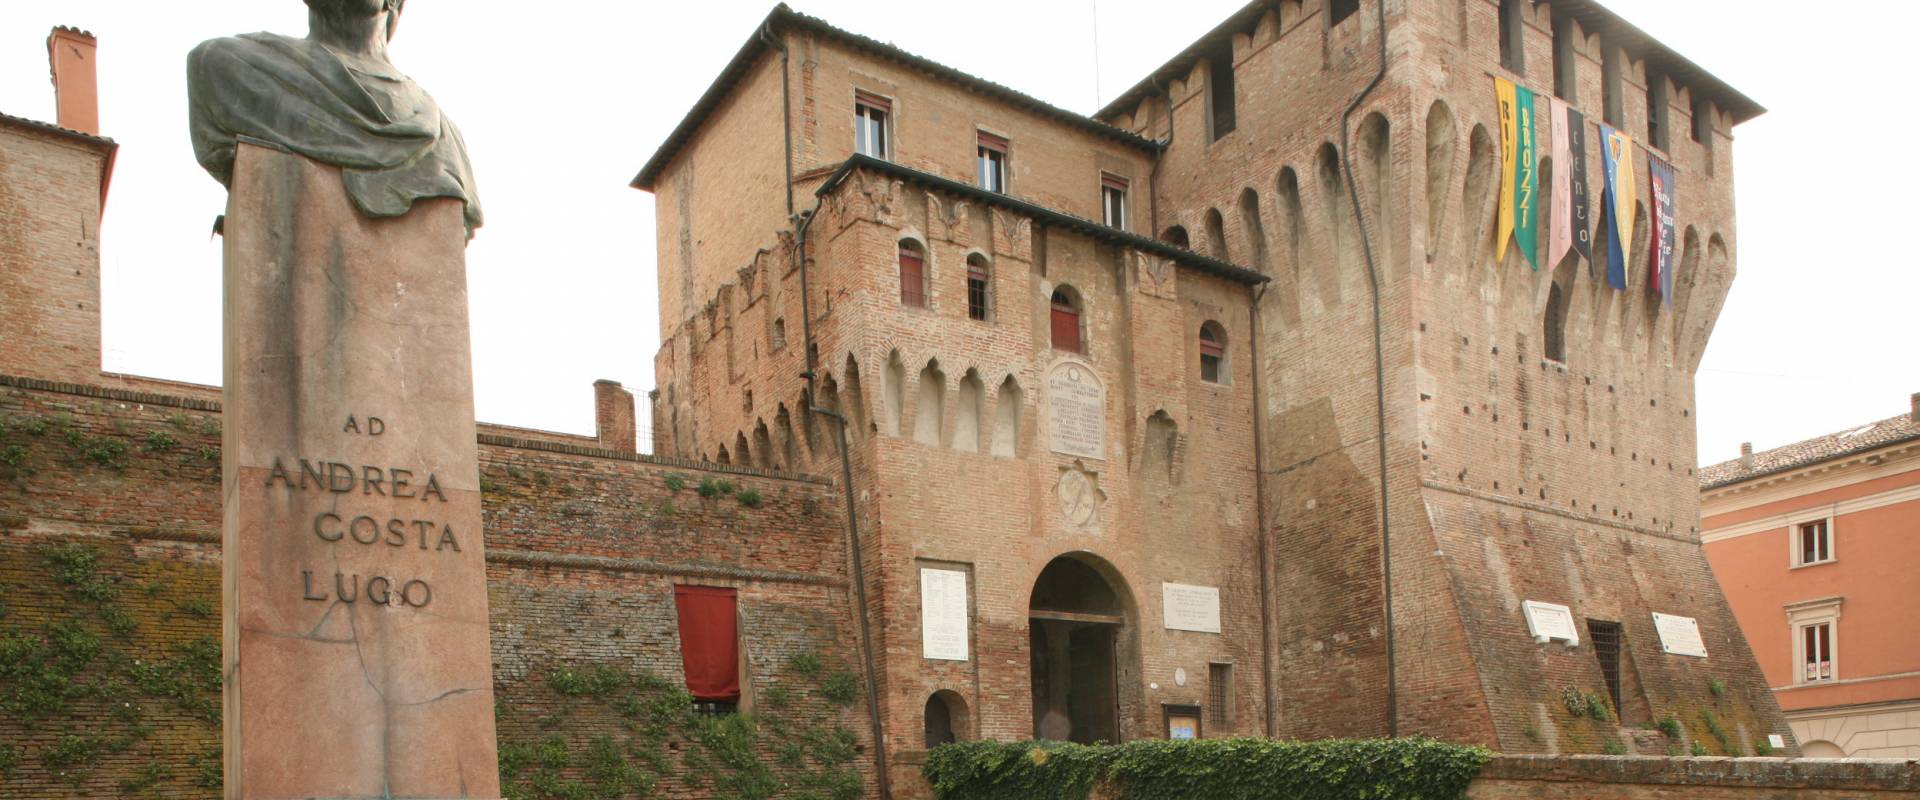 Rocca Estense foto di Gianni Bartolotti